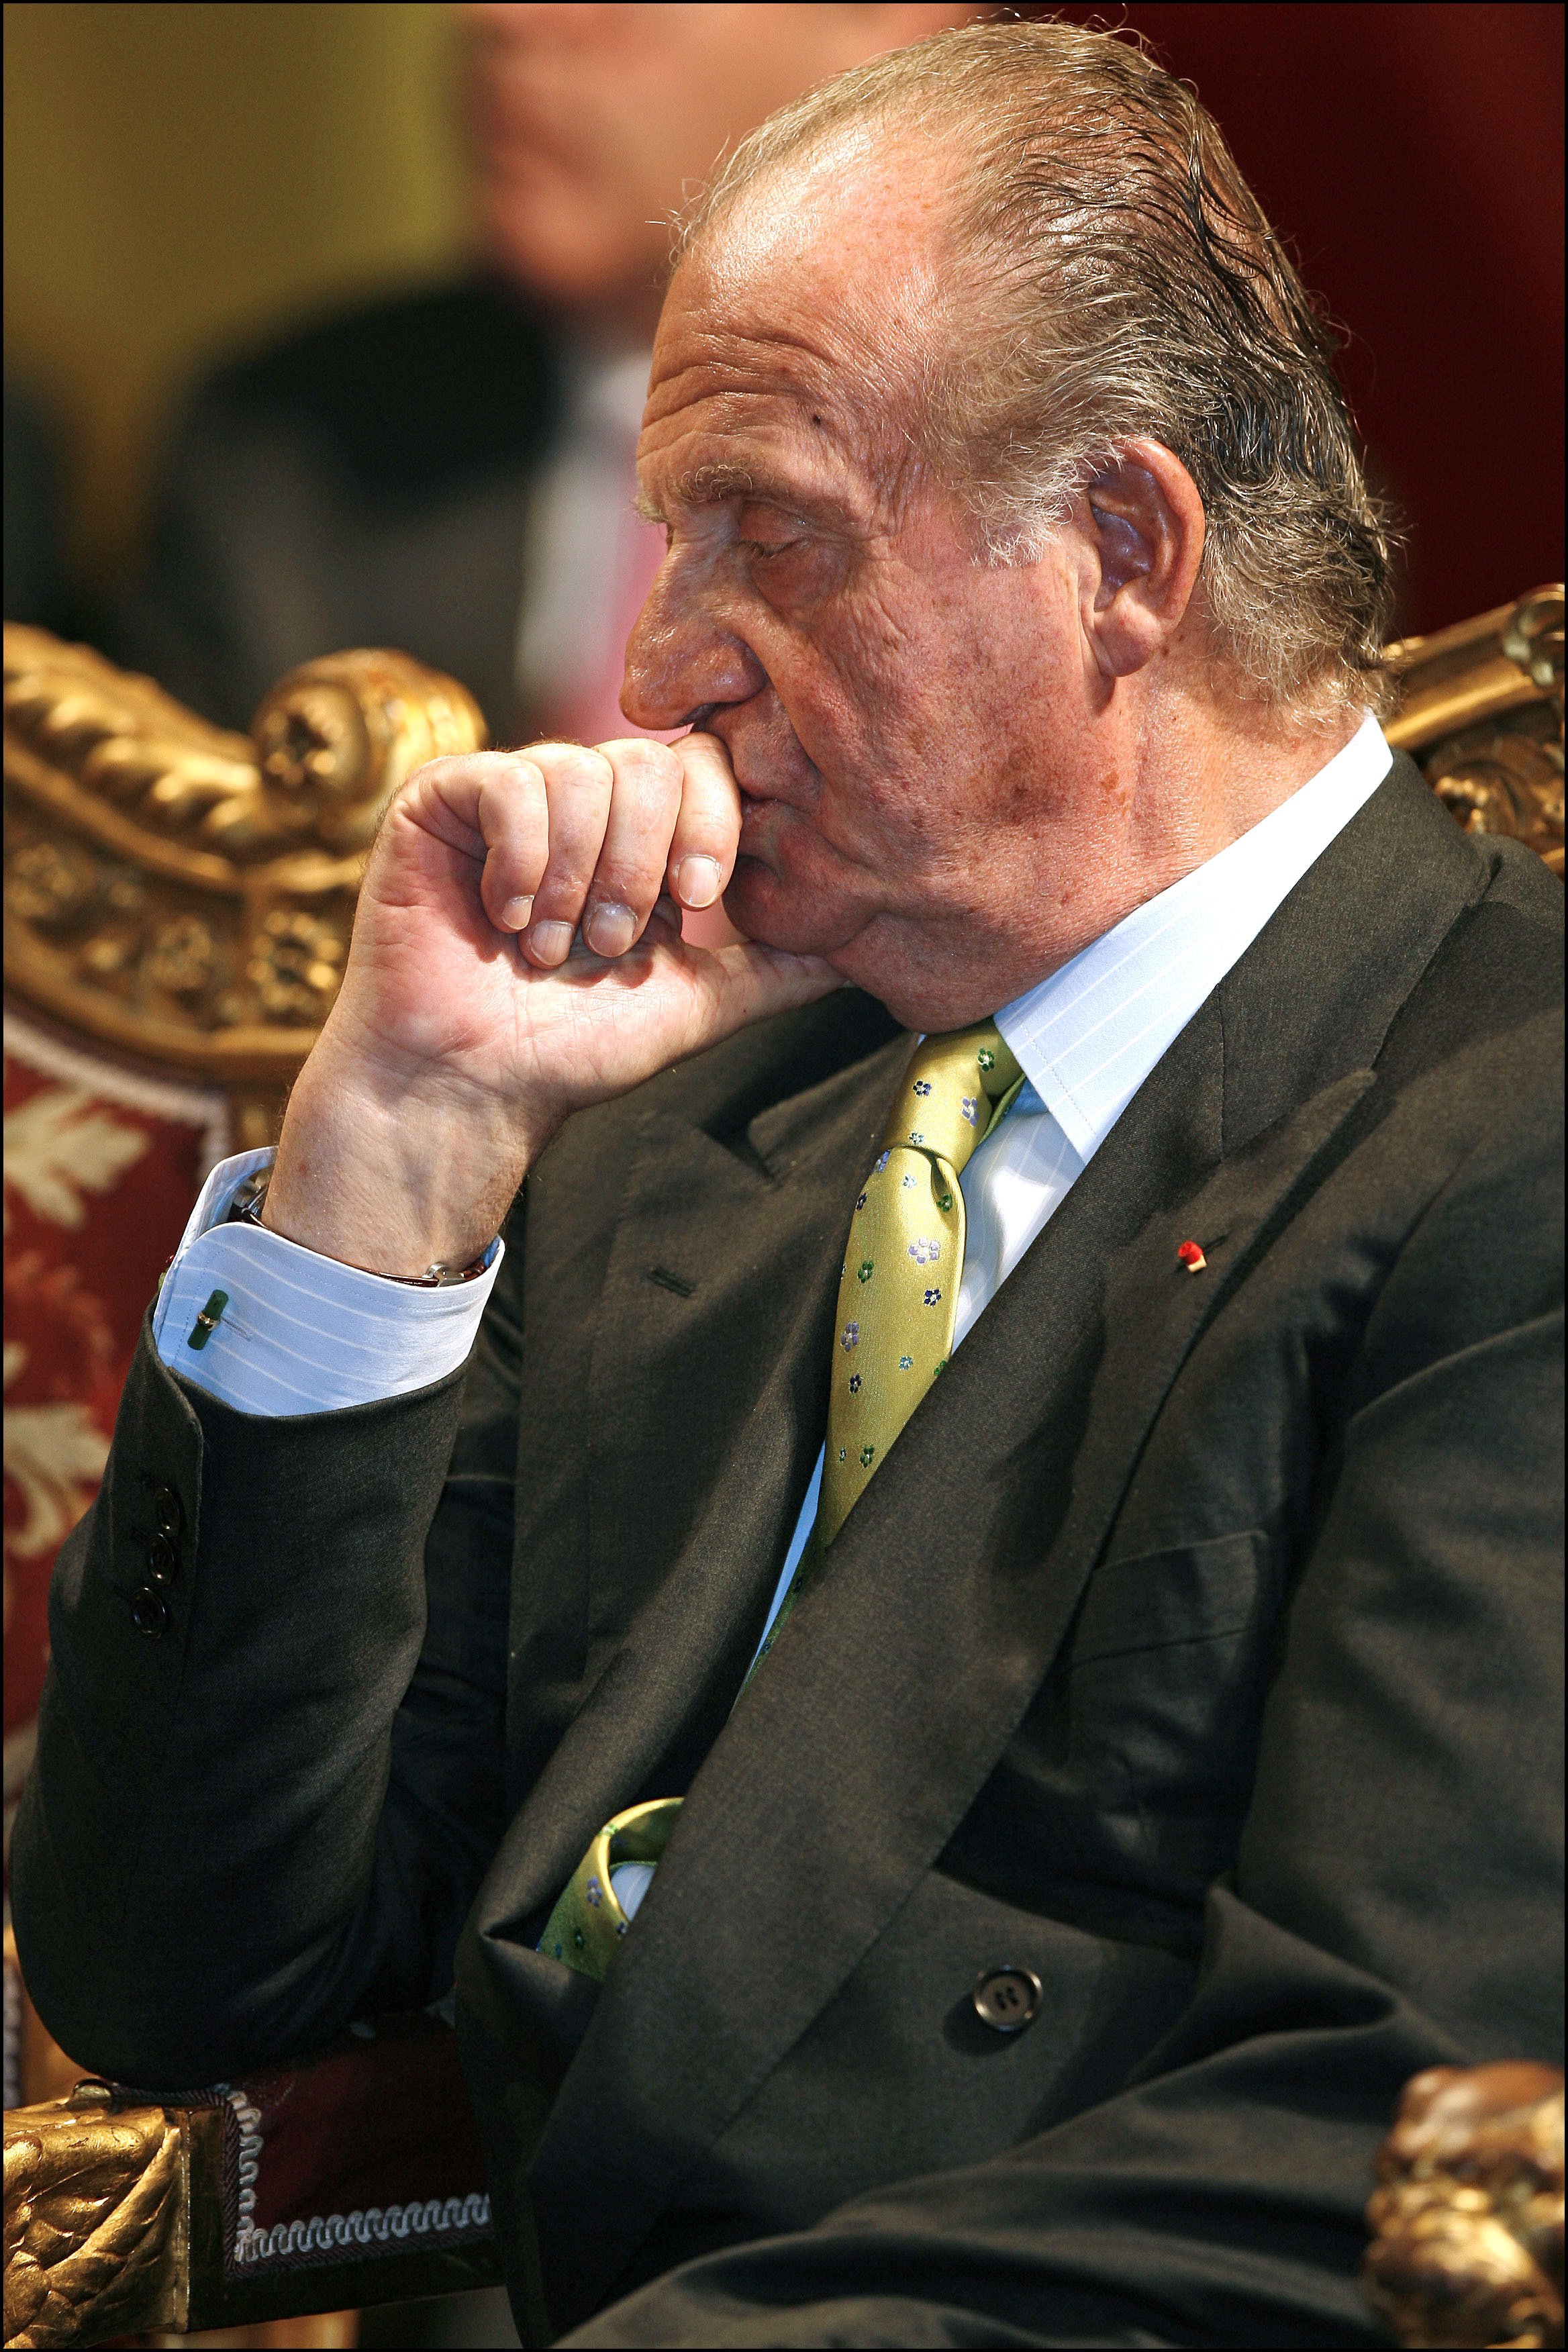 Más escándalo: una fundación suiza pagaba los vuelos secretos de Juan Carlos